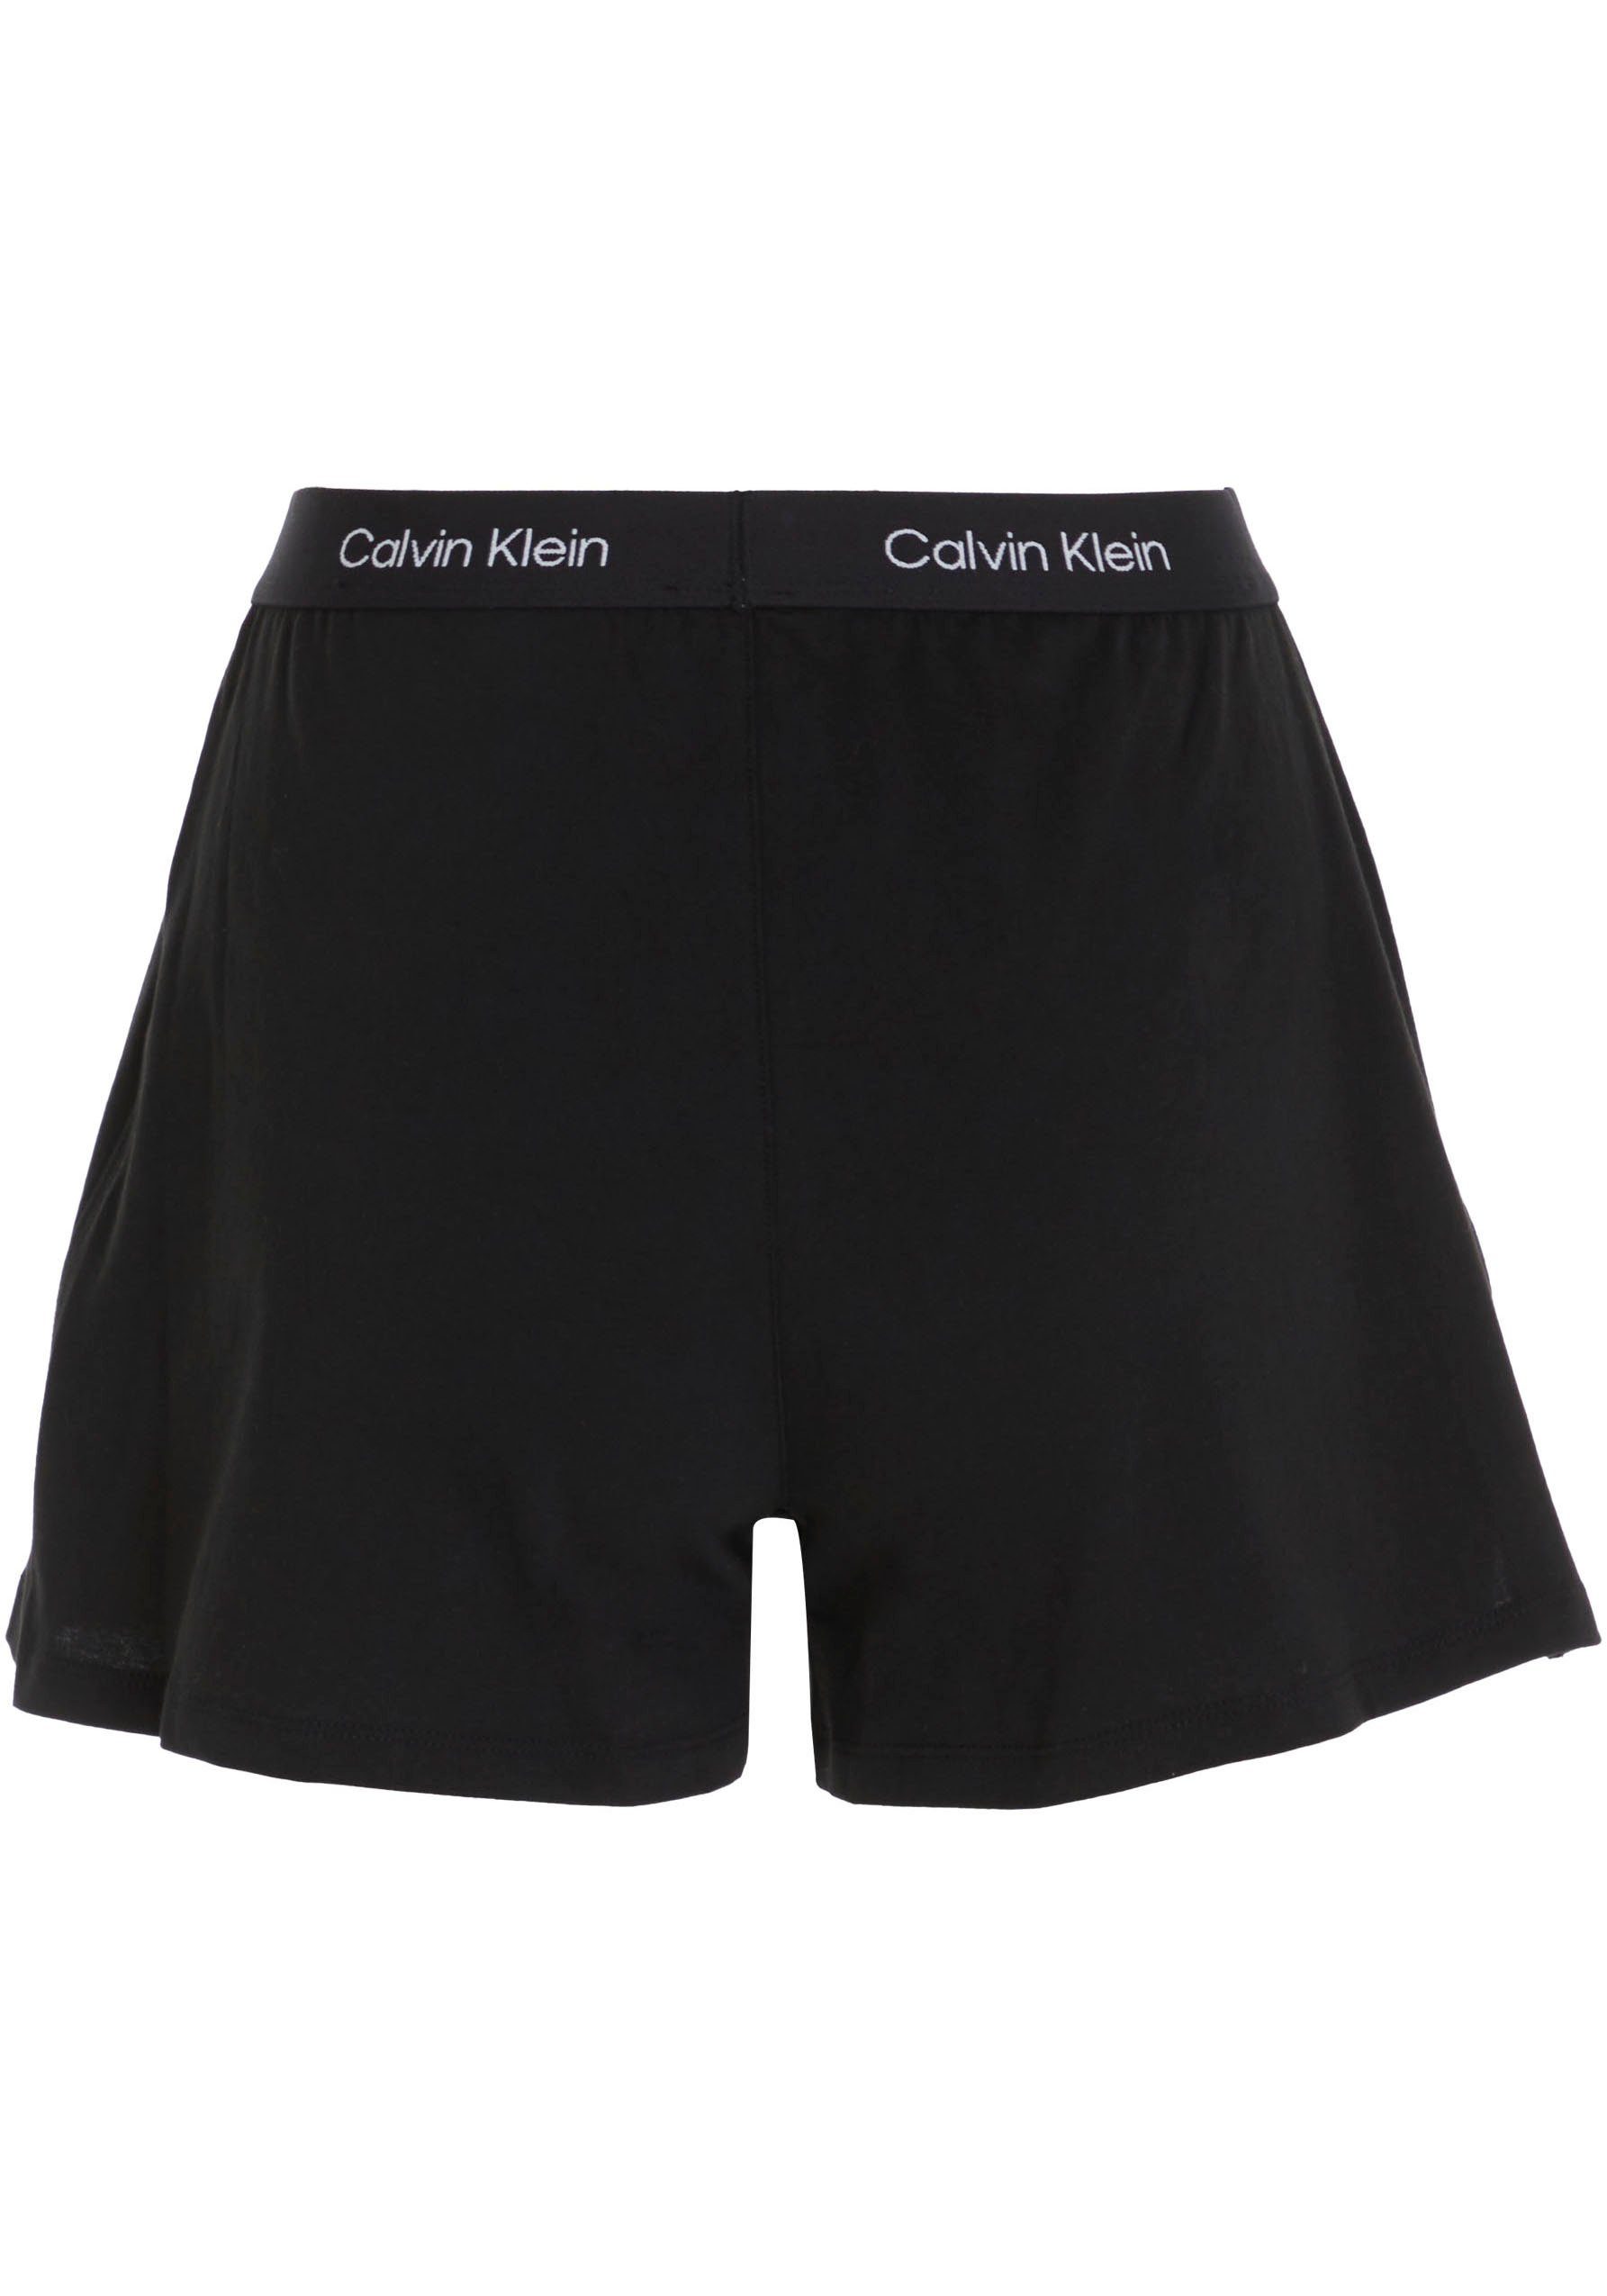 klassischem SHORT mit Klein Logobund BLACK SLEEP Underwear Schlafshorts Calvin